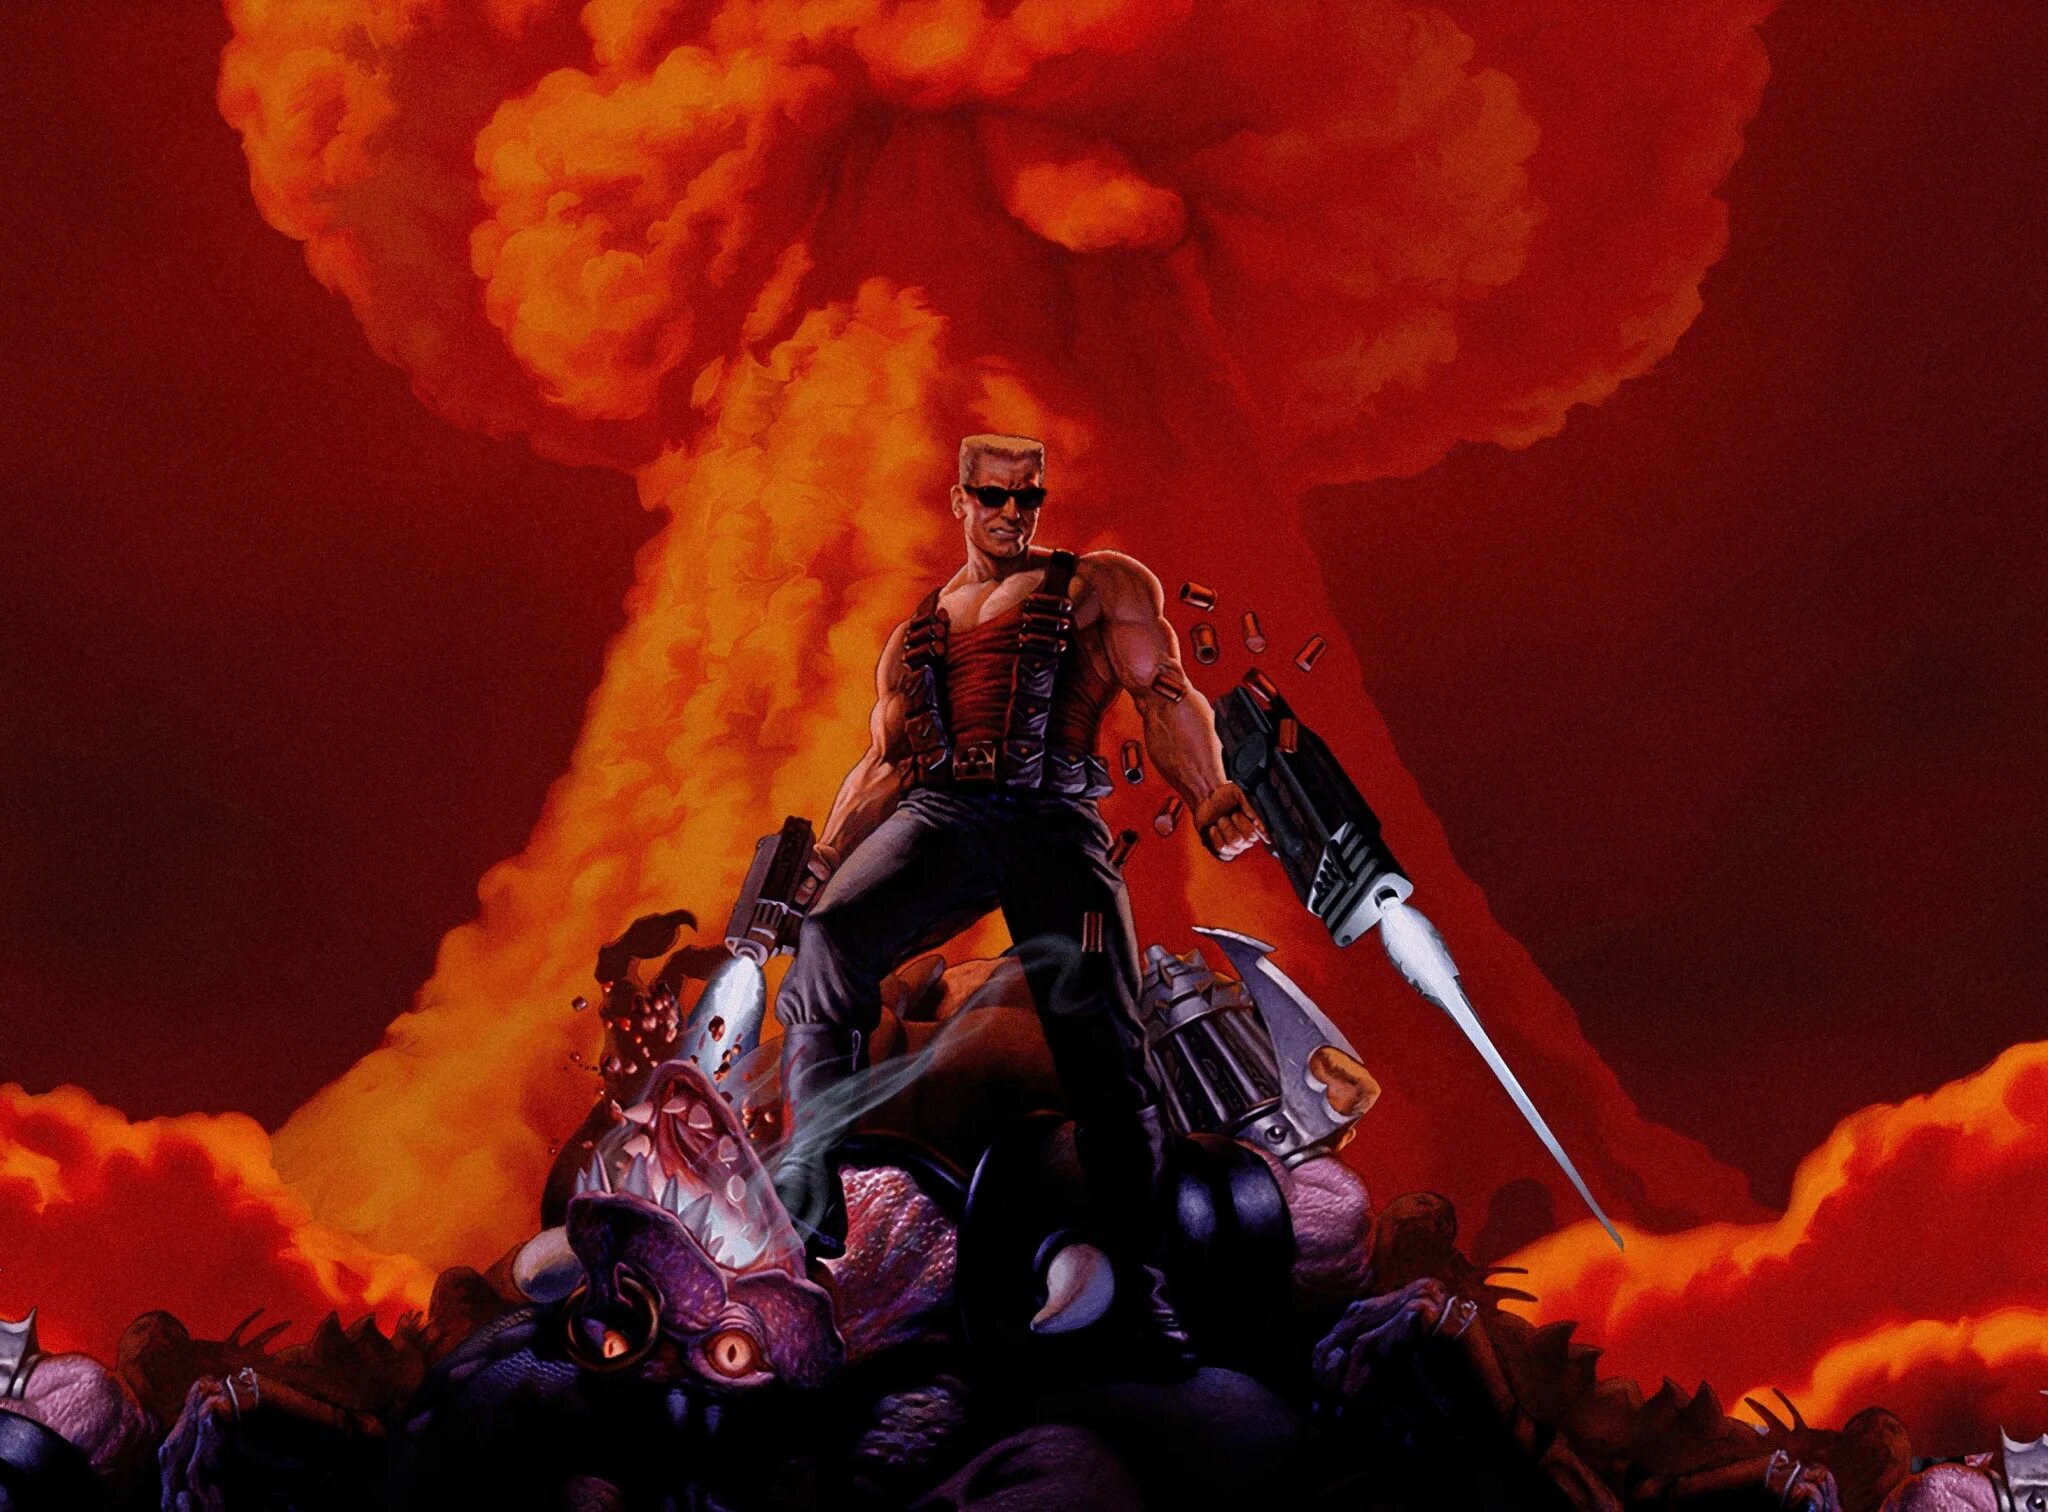 Duke Nukem 3d. Duke Nukem 3d Remastered. Duke Nukem 3d ремастер. Duke Nukem 3d Megaton Edition.